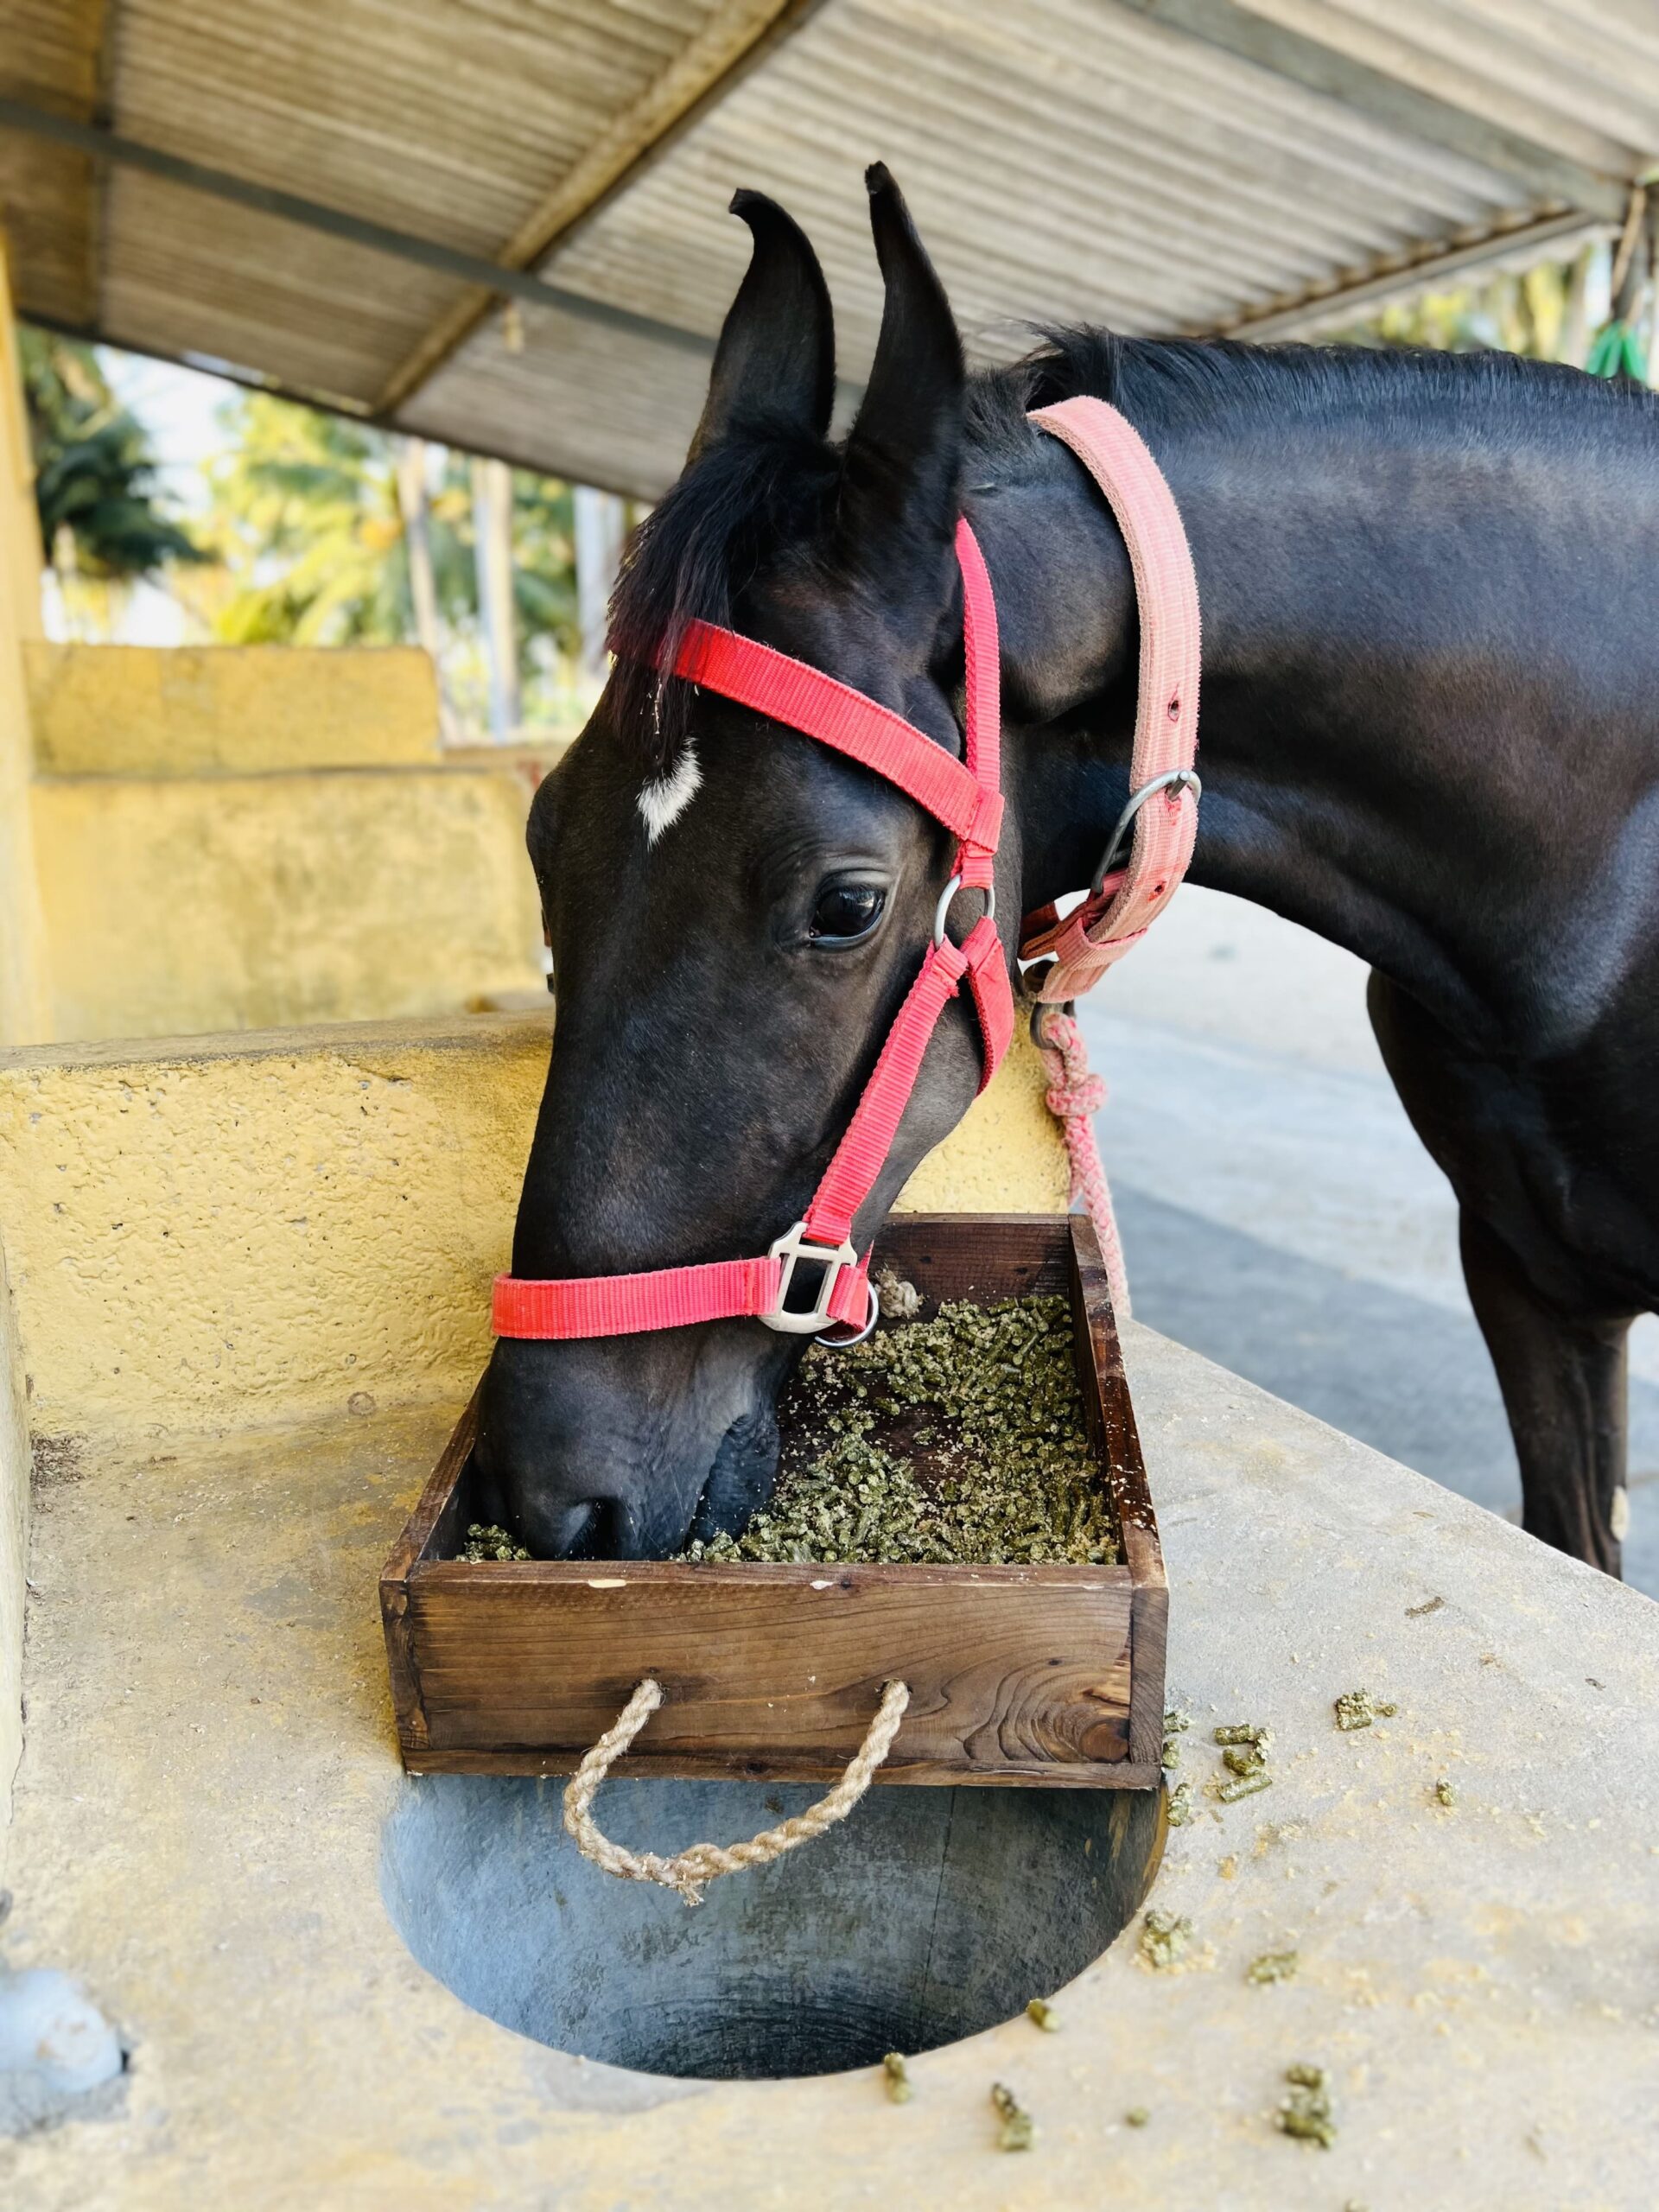 Moringa pellets for horse